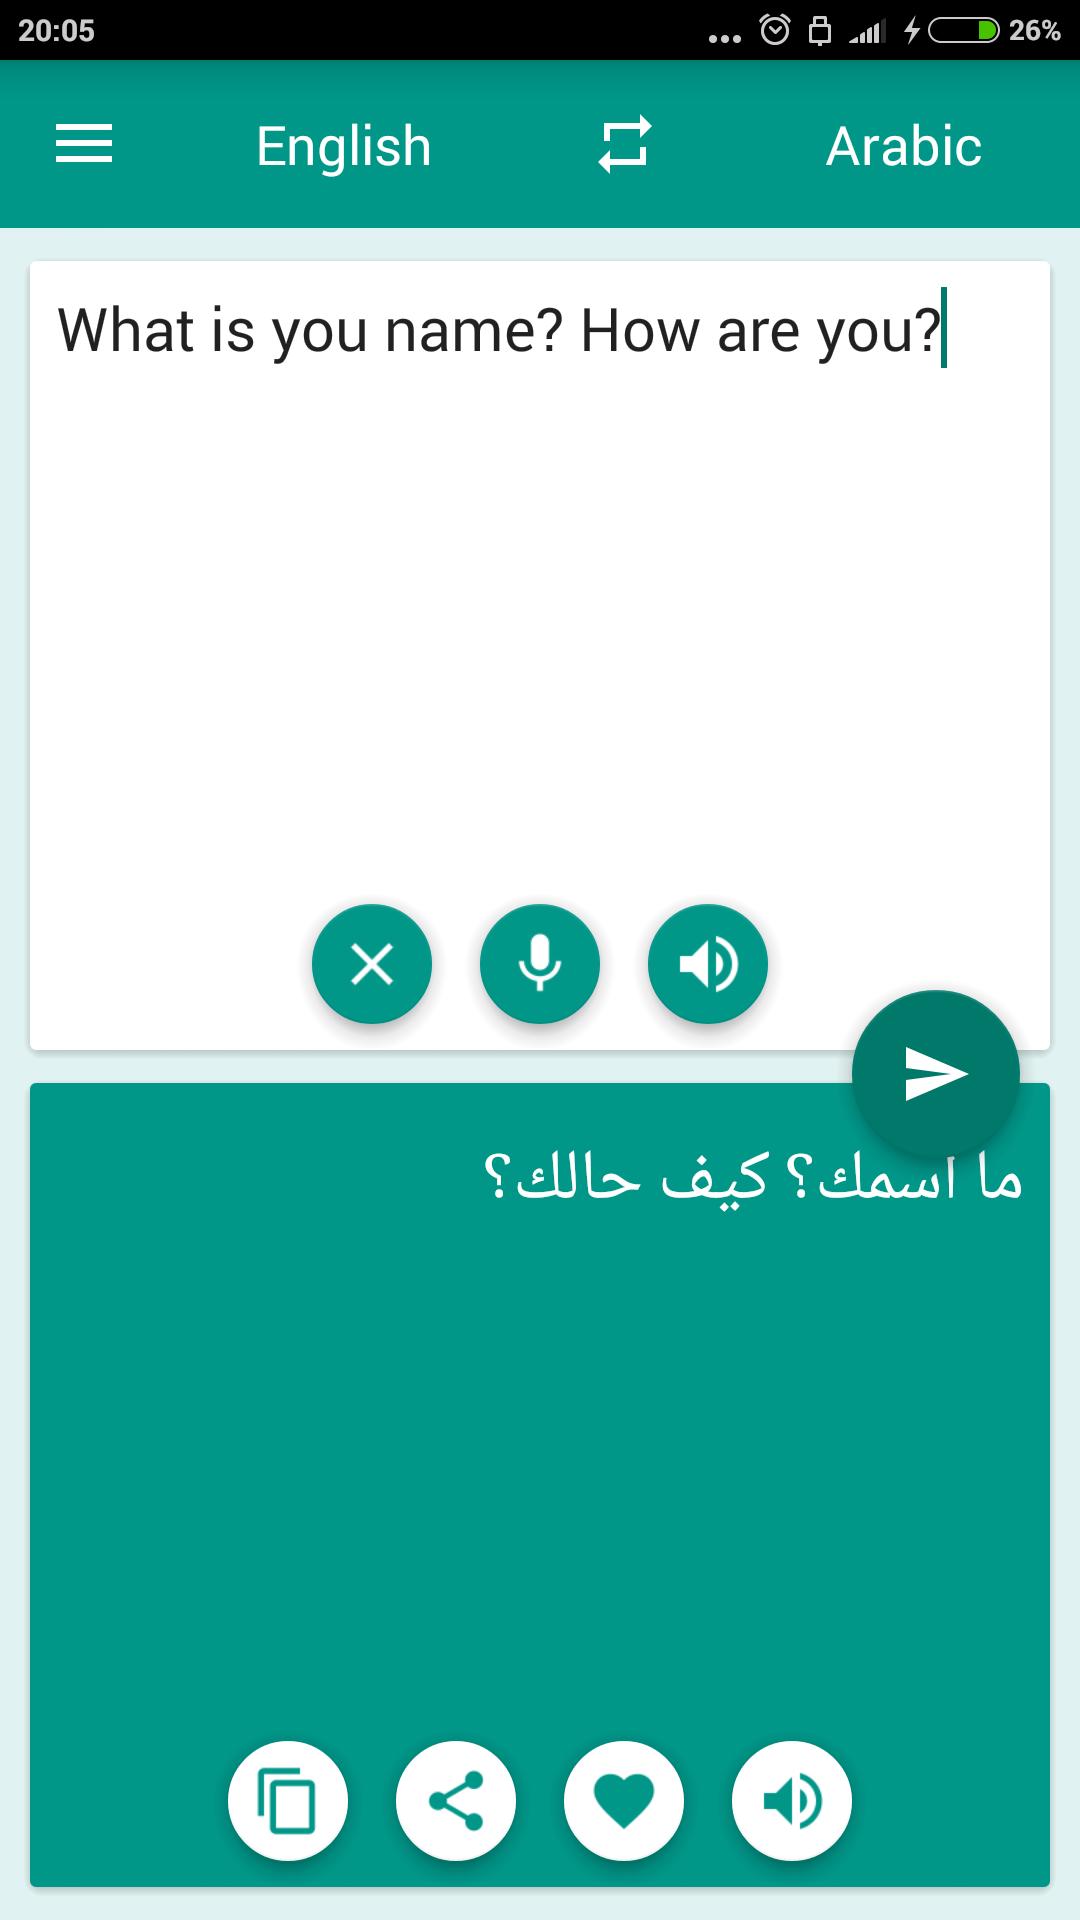 مترجم عربي انجليزي For Android Apk Download